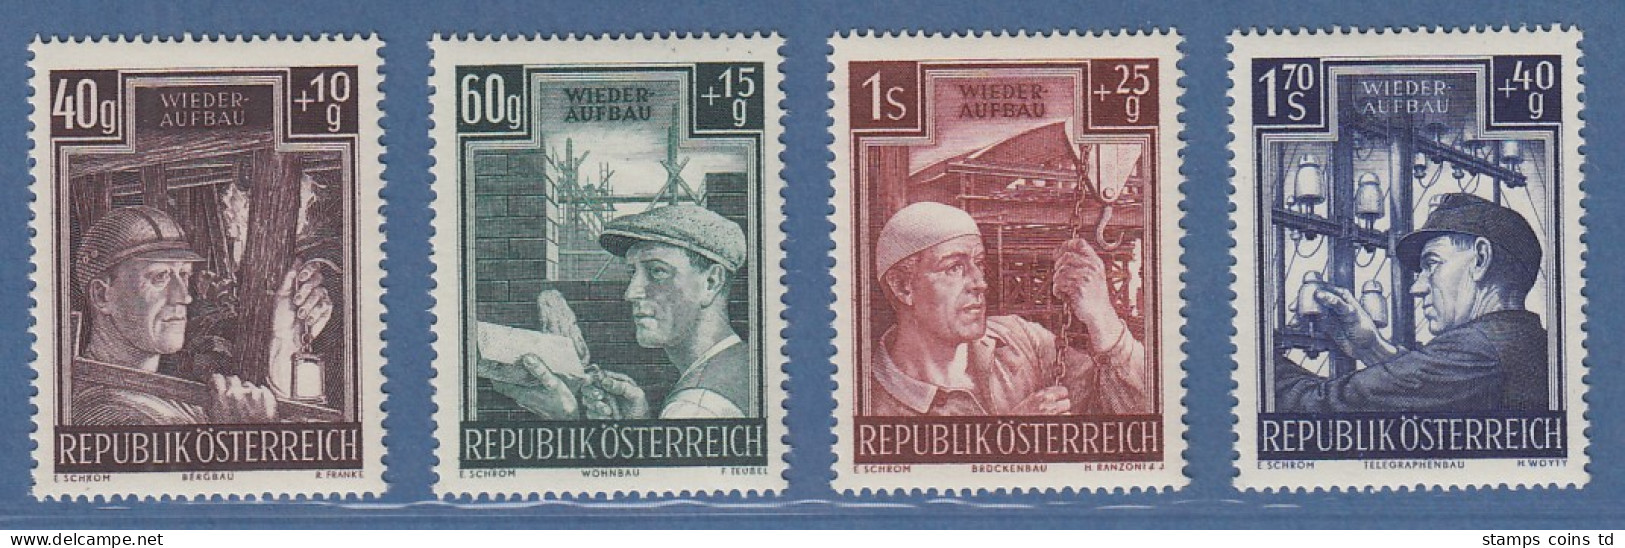 Österreich 1951 Sondermarken Wiederaufbau Satz 4 Werte Mi.-Nr. 960-963 - Neufs